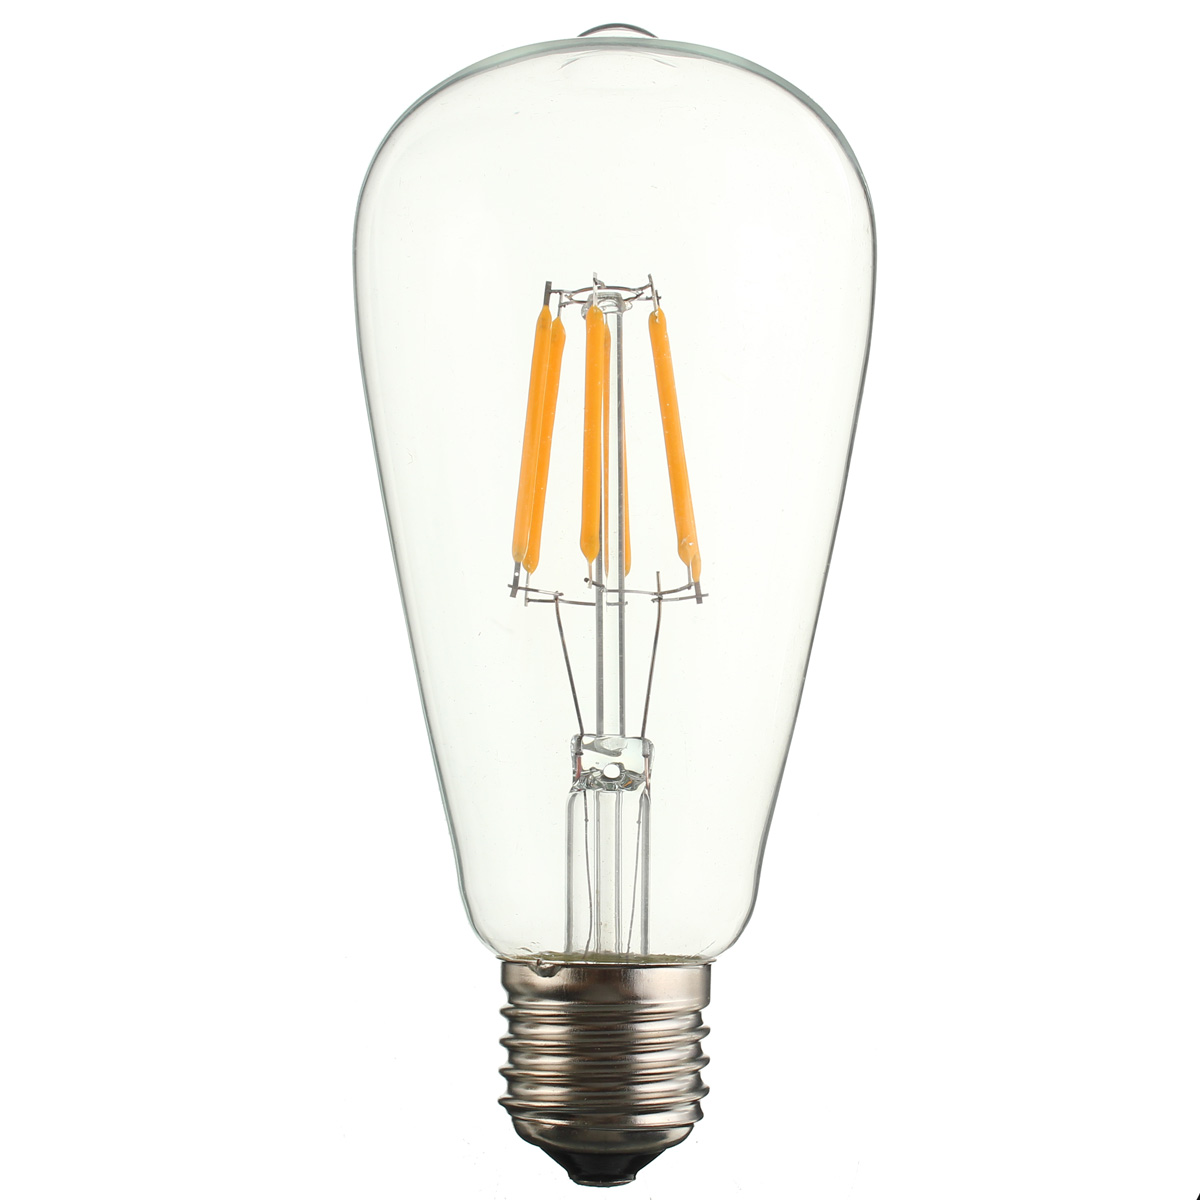 Kingso-Dimmable-E27-ST64-6W-COB-Filament-Edison-Vintage-LED-Light-Bulb-AC110V-120V-1535988-4